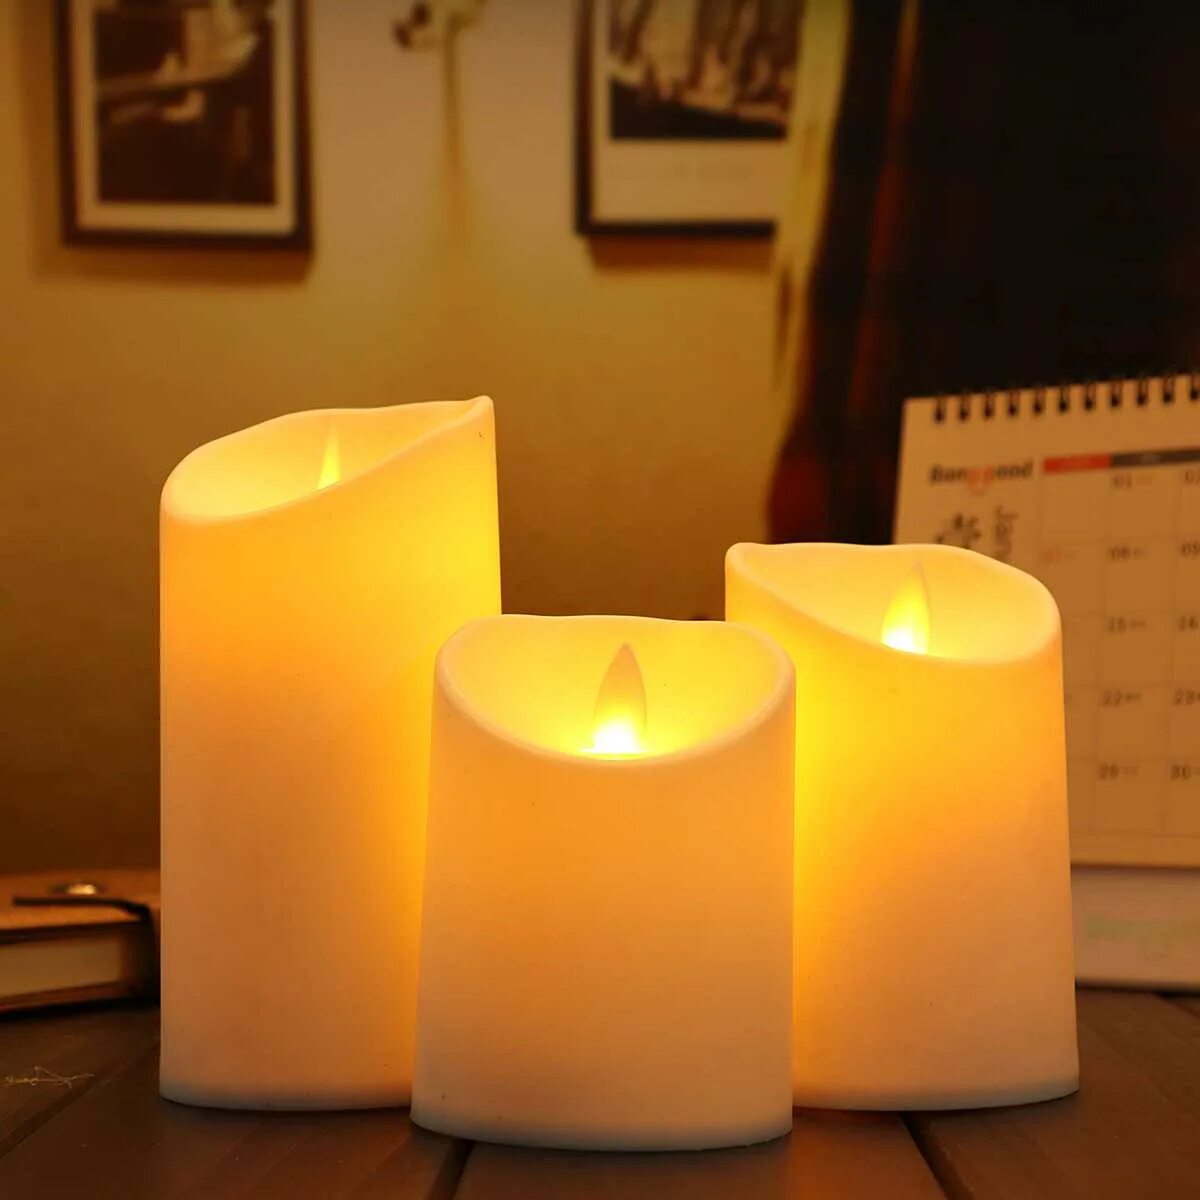 Luminary свечи. Имитация свечи. Светильники имитирующие свечи. Лампа имитация свечи. Лампы имитирующие свечи в подсвечниках.